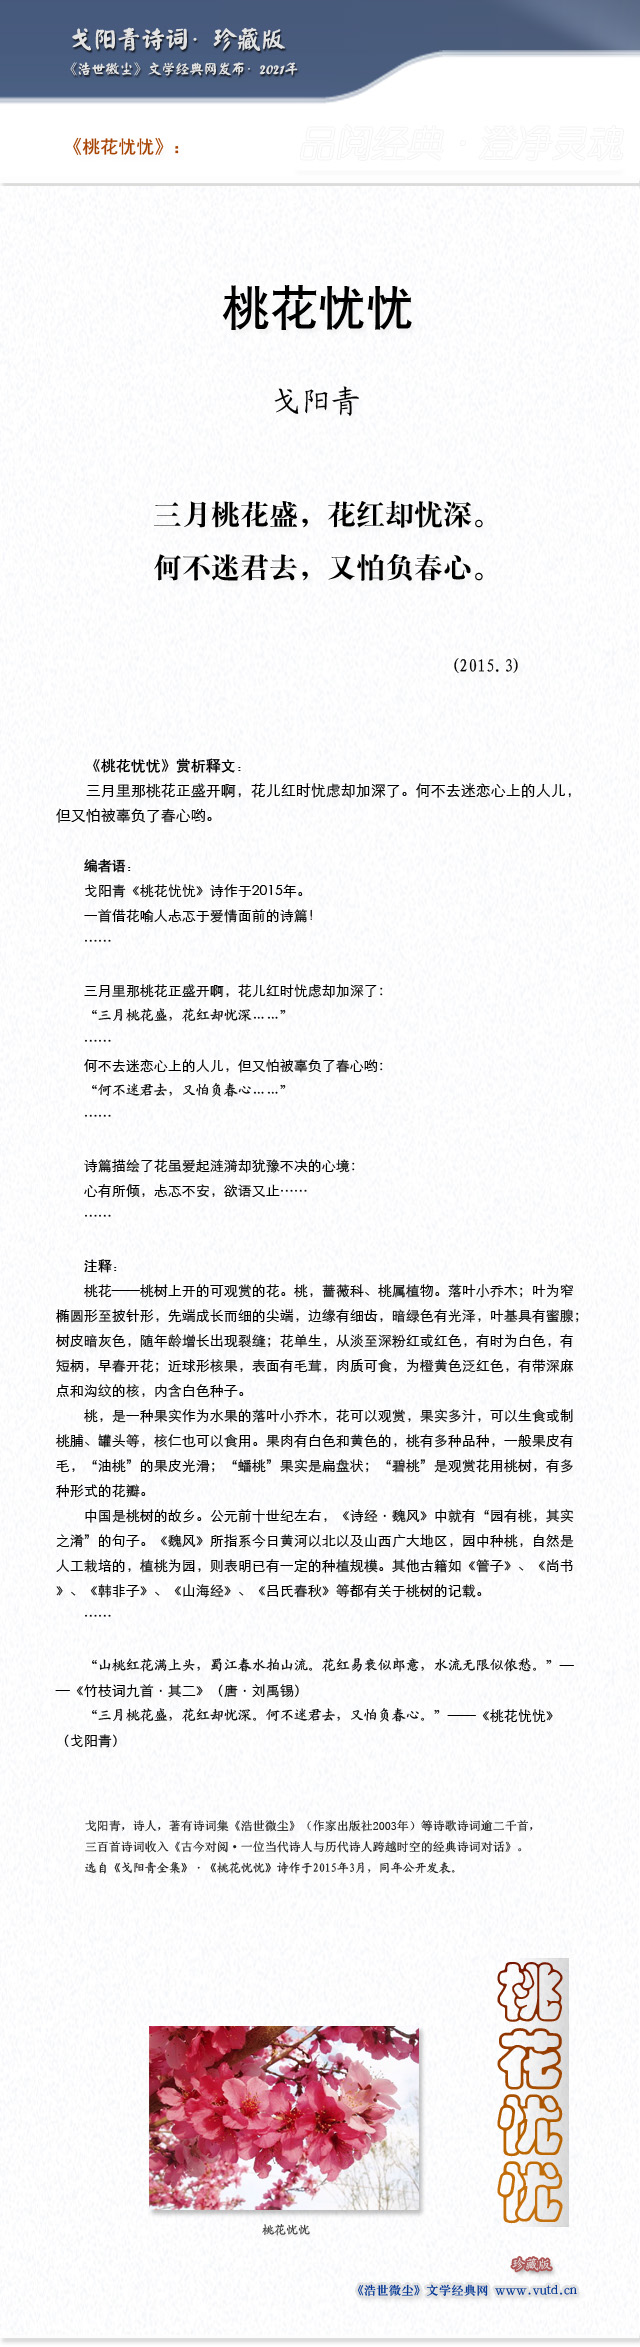 戈阳青诗词最新发表 21年3月